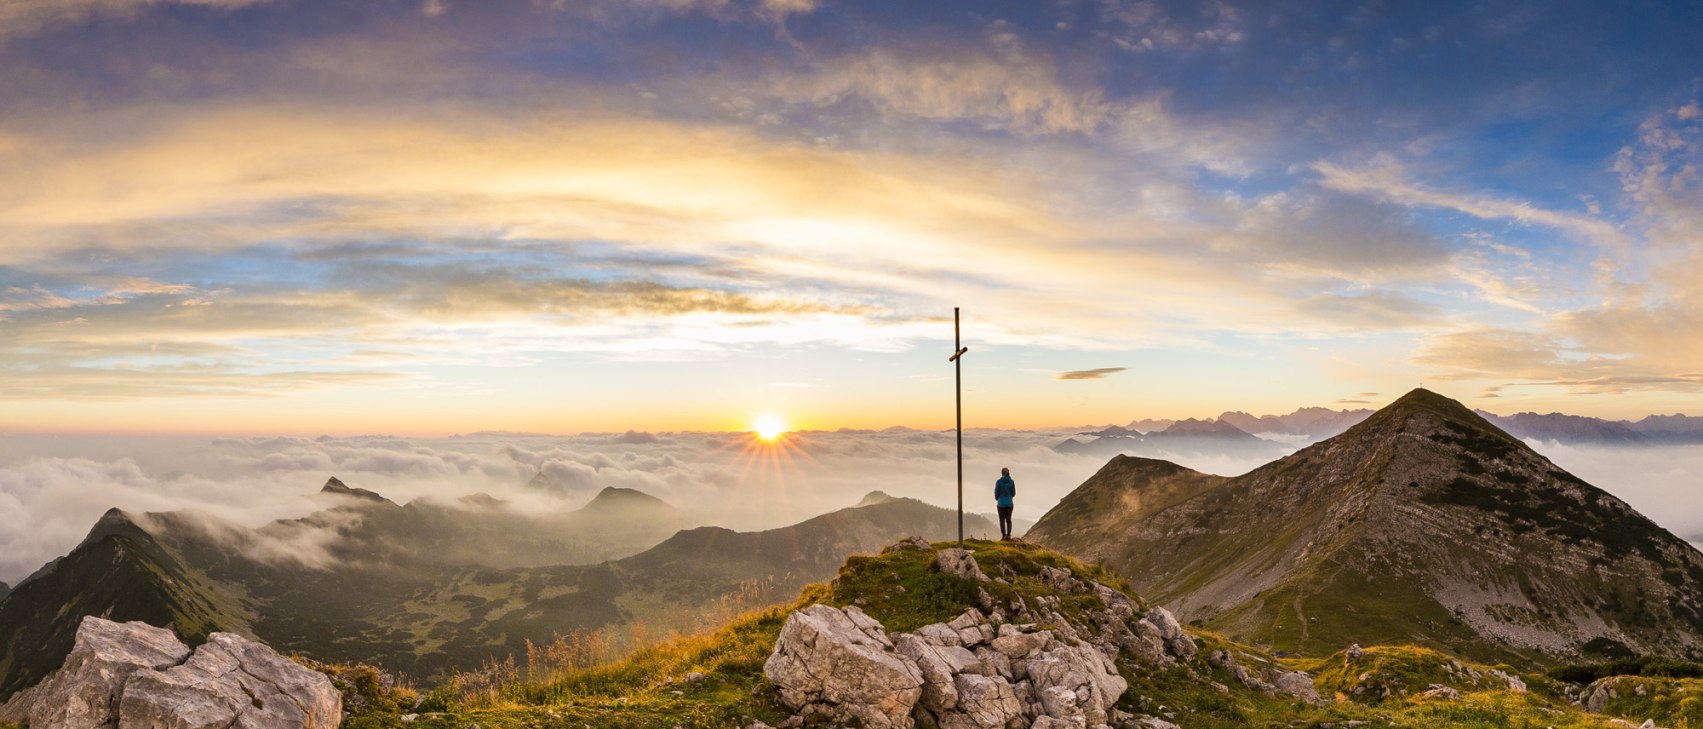 Sonnenaufgang im Estergebirge, © Alpenwelt Karwendel Kriner&Weiermann, Martin Kriner u. Christian Weiermann